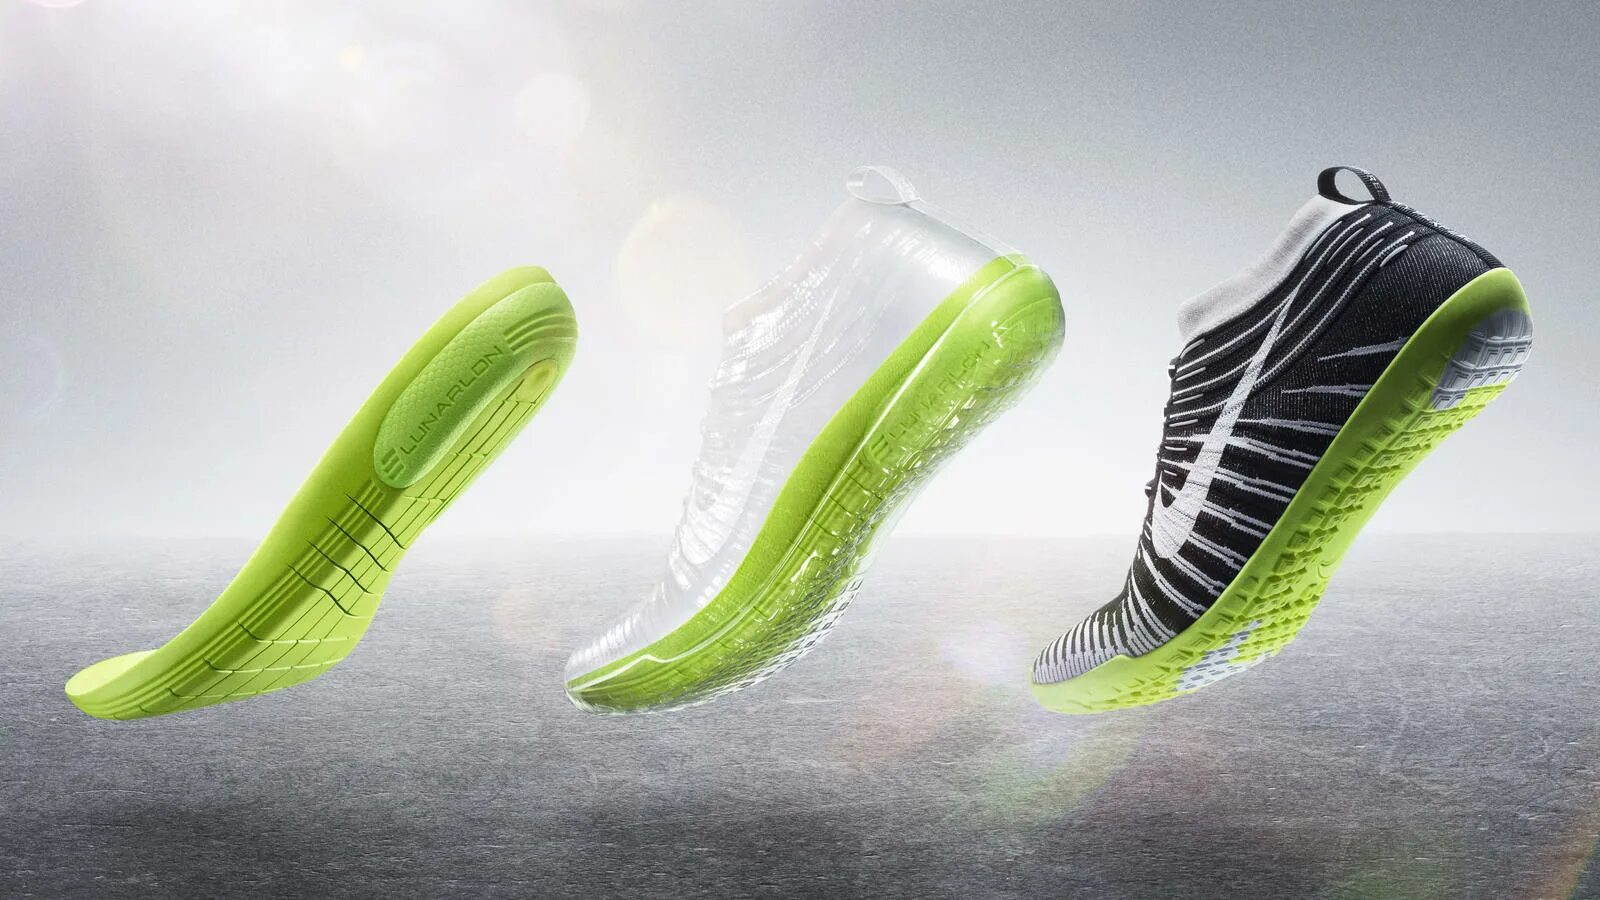 Nike Flyknit подошва. New Shoes Nike 2022. Материалы найк